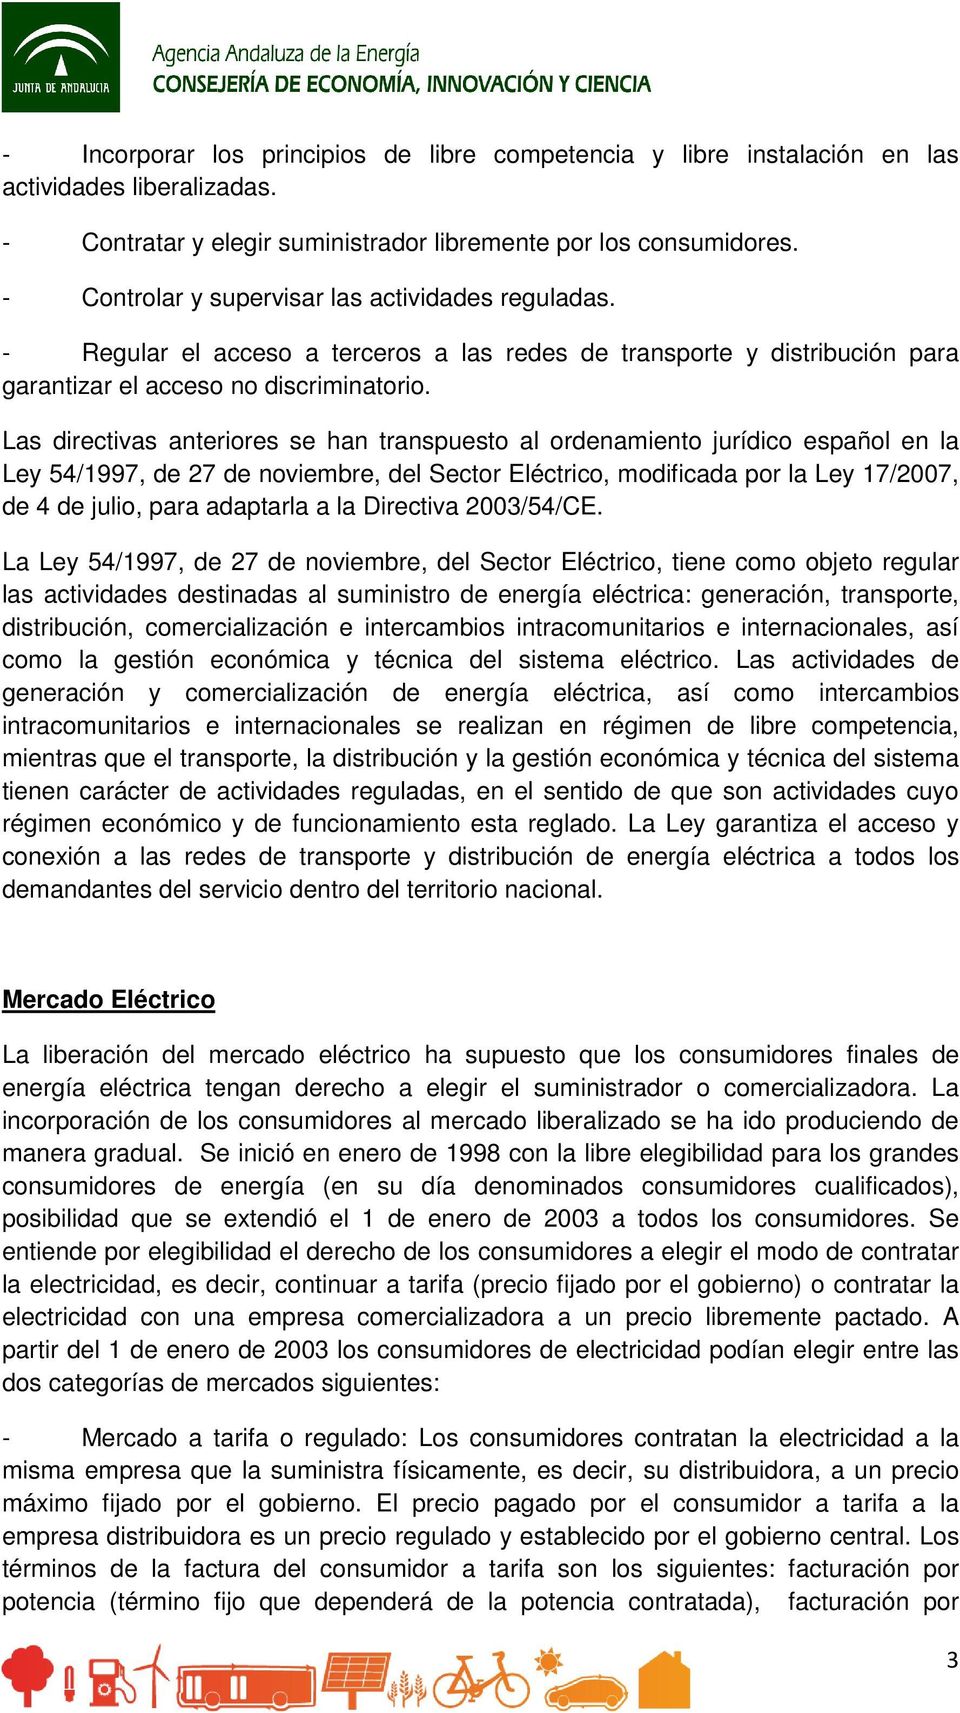 Las directivas anteriores se han transpuesto al ordenamiento jurídico español en la Ley 54/1997, de 27 de noviembre, del Sector Eléctrico, modificada por la Ley 17/2007, de 4 de julio, para adaptarla